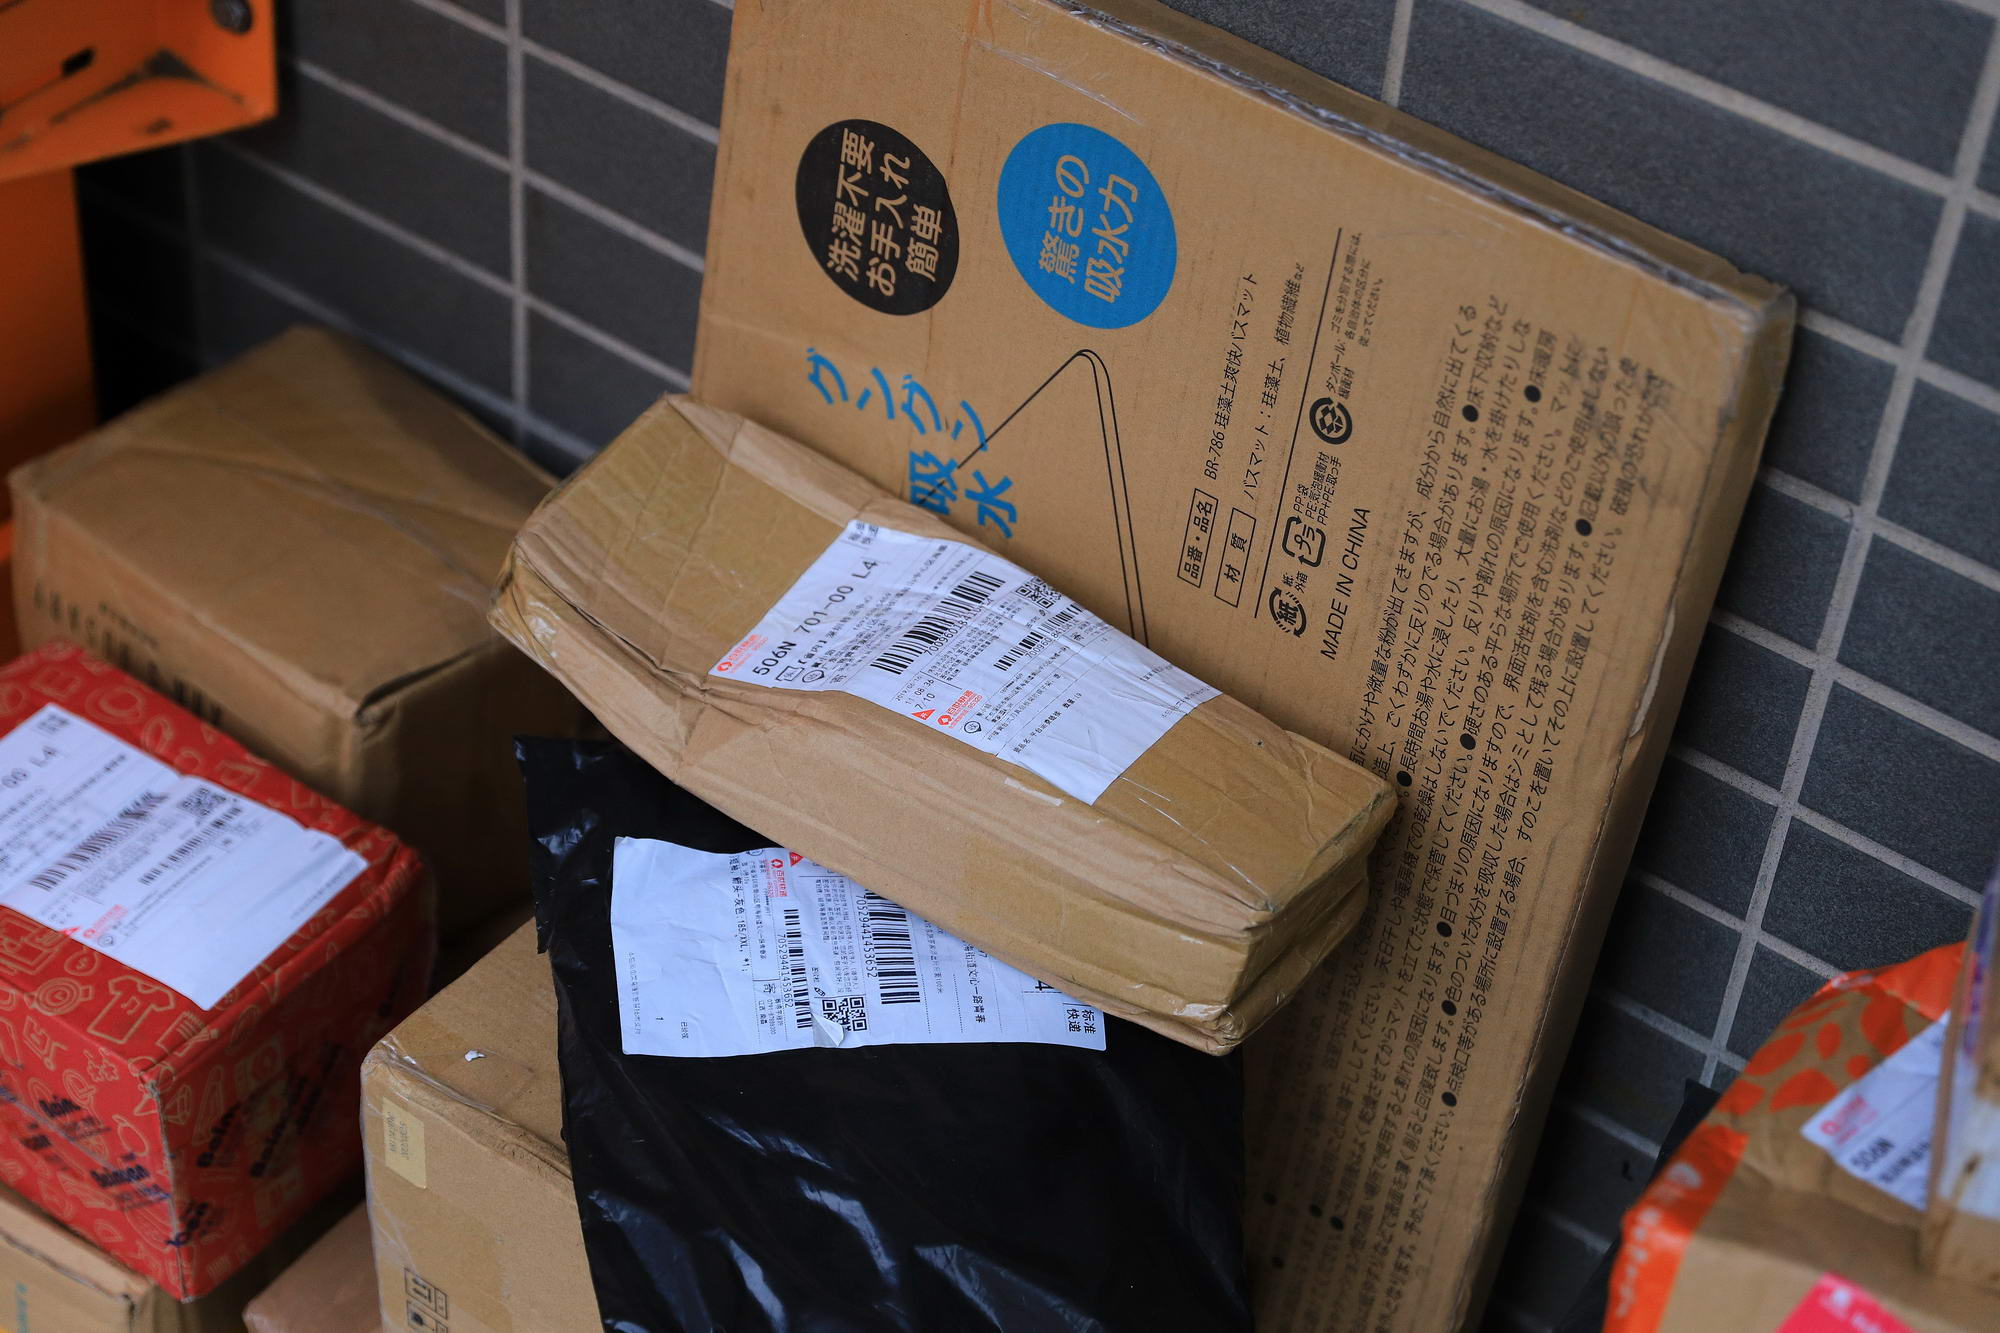 美国邮政重审亚马逊、UPS等包裹递送合同_物流_电商之家